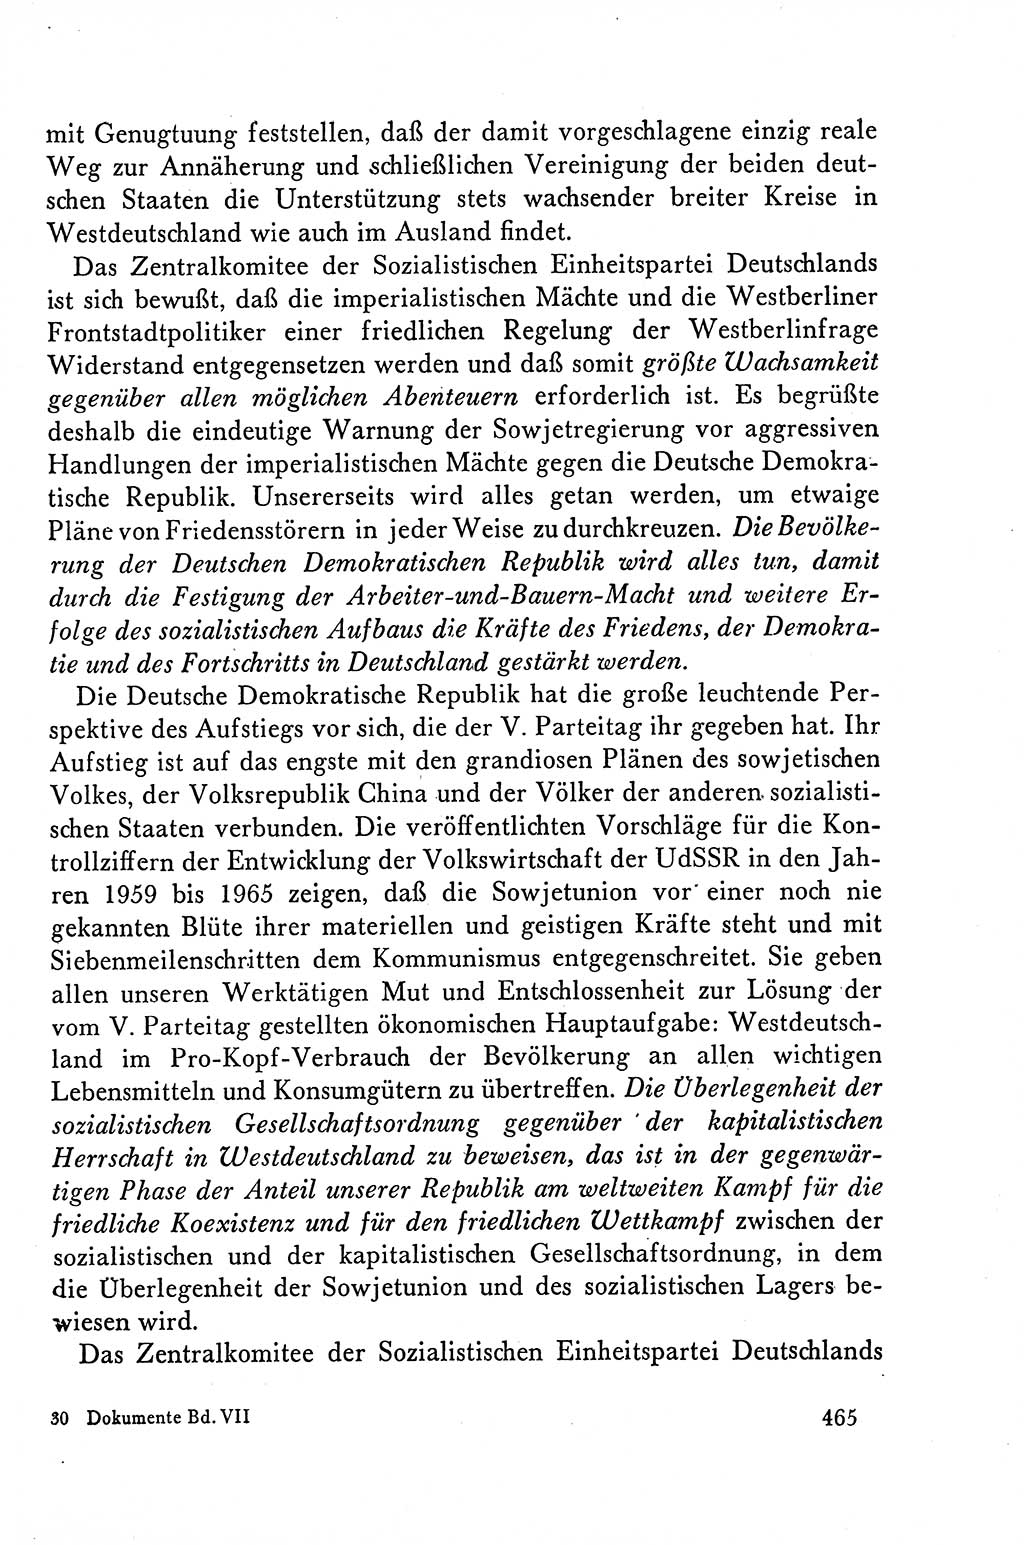 Dokumente der Sozialistischen Einheitspartei Deutschlands (SED) [Deutsche Demokratische Republik (DDR)] 1958-1959, Seite 465 (Dok. SED DDR 1958-1959, S. 465)